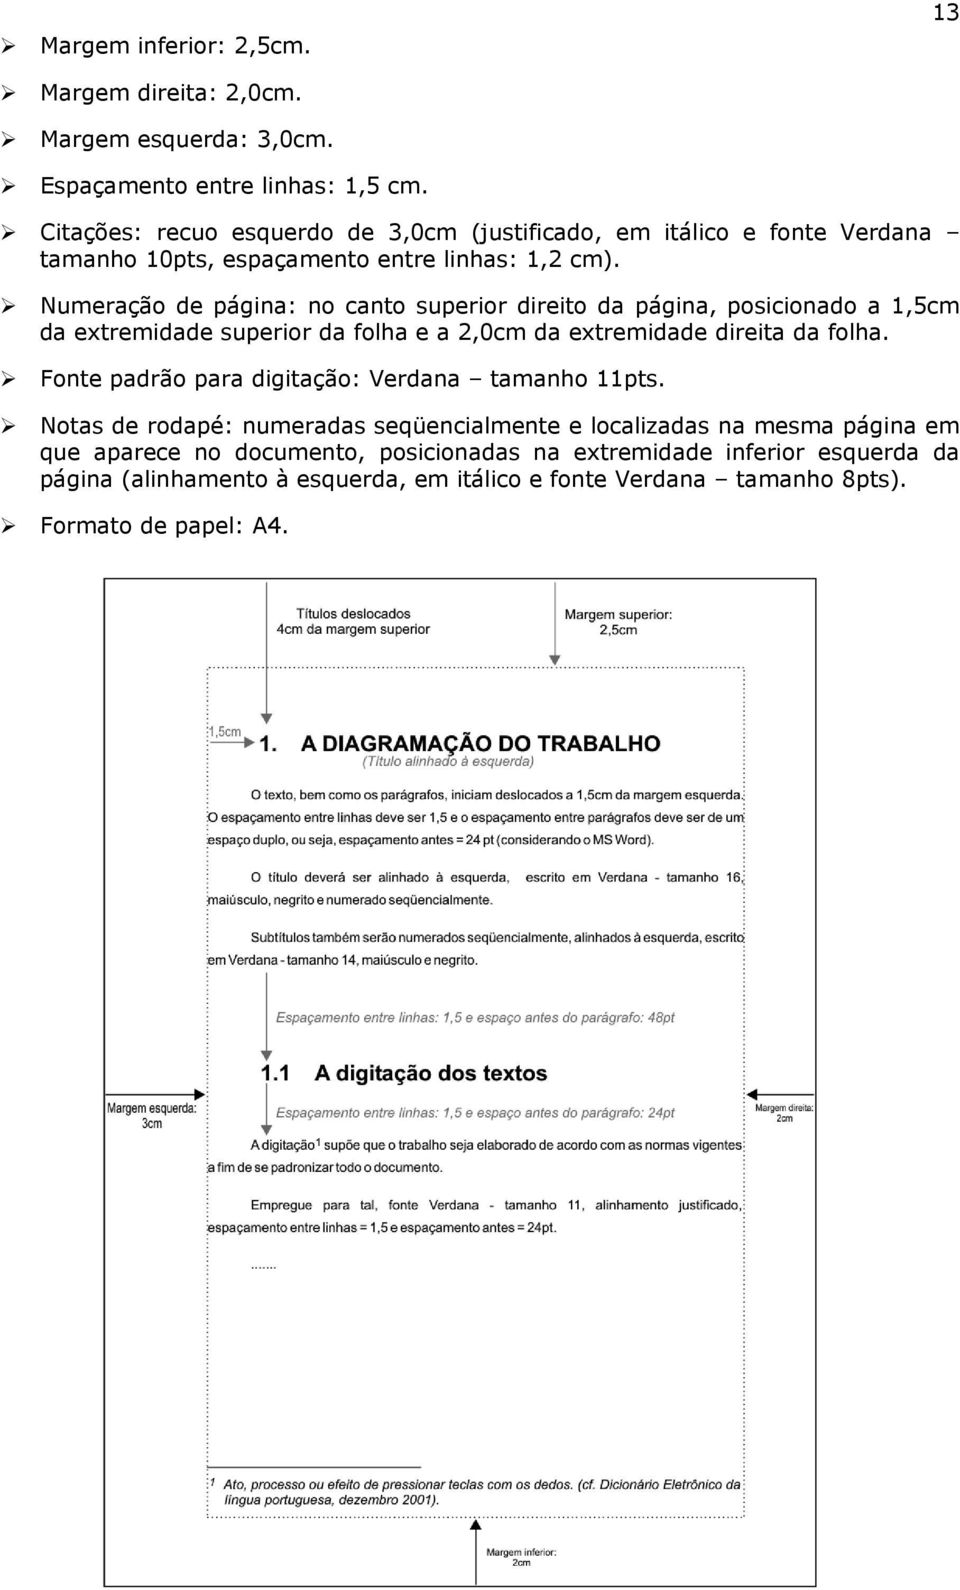 Numeração de página: no canto superior direito da página, posicionado a 1,5cm da extremidade superior da folha e a 2,0cm da extremidade direita da folha.